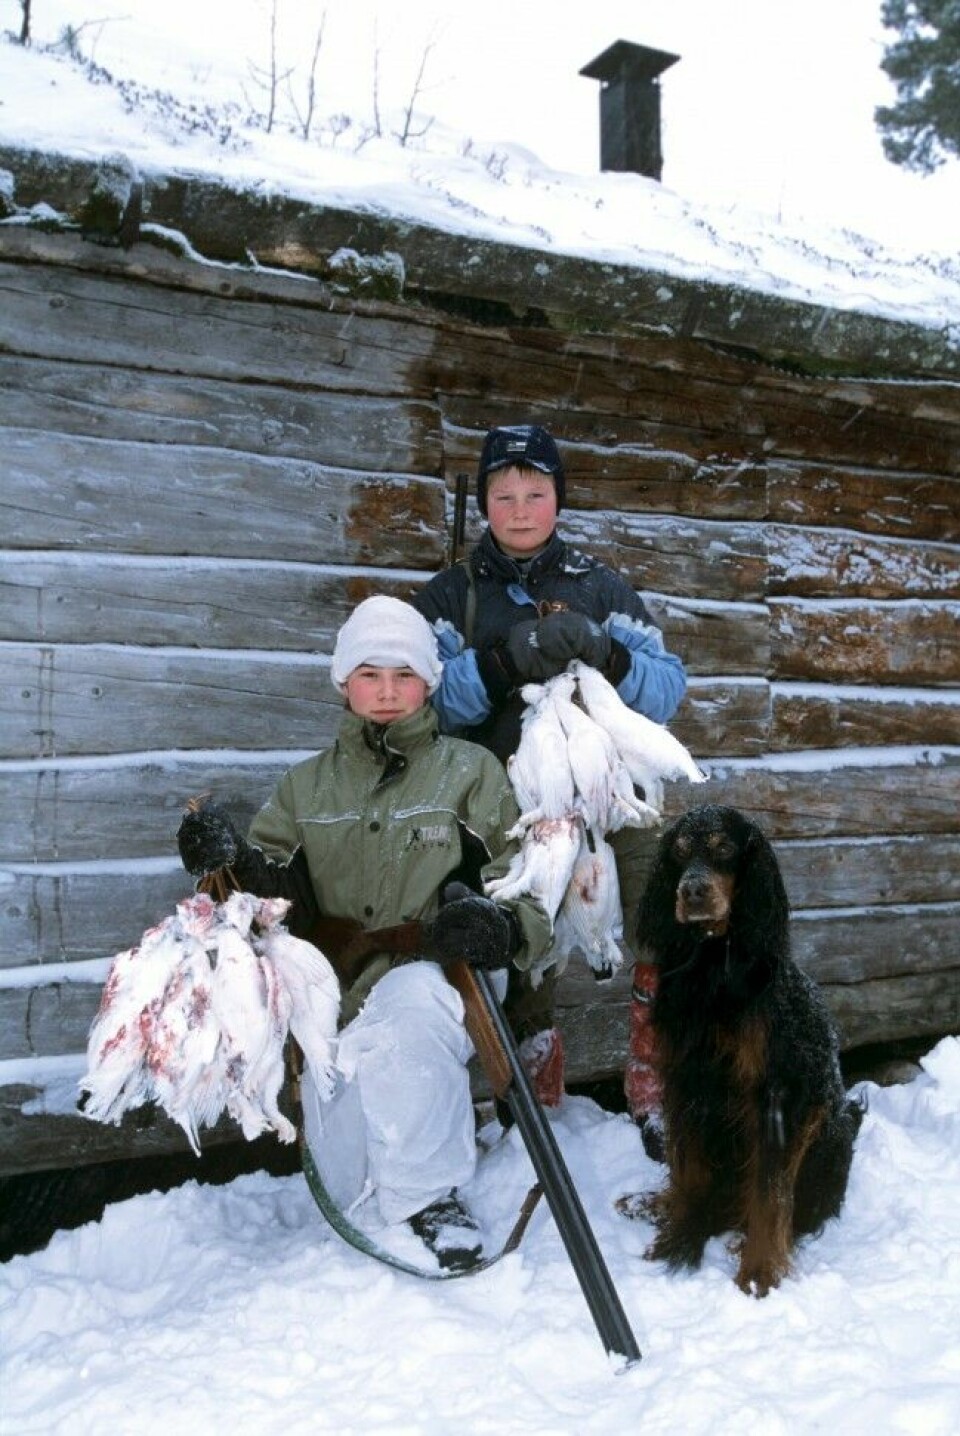 To stolte poder og en gammel gordon viser fram fedrenes fangst etter en vellykket vinterjakt. Slikt gir minner for livet.